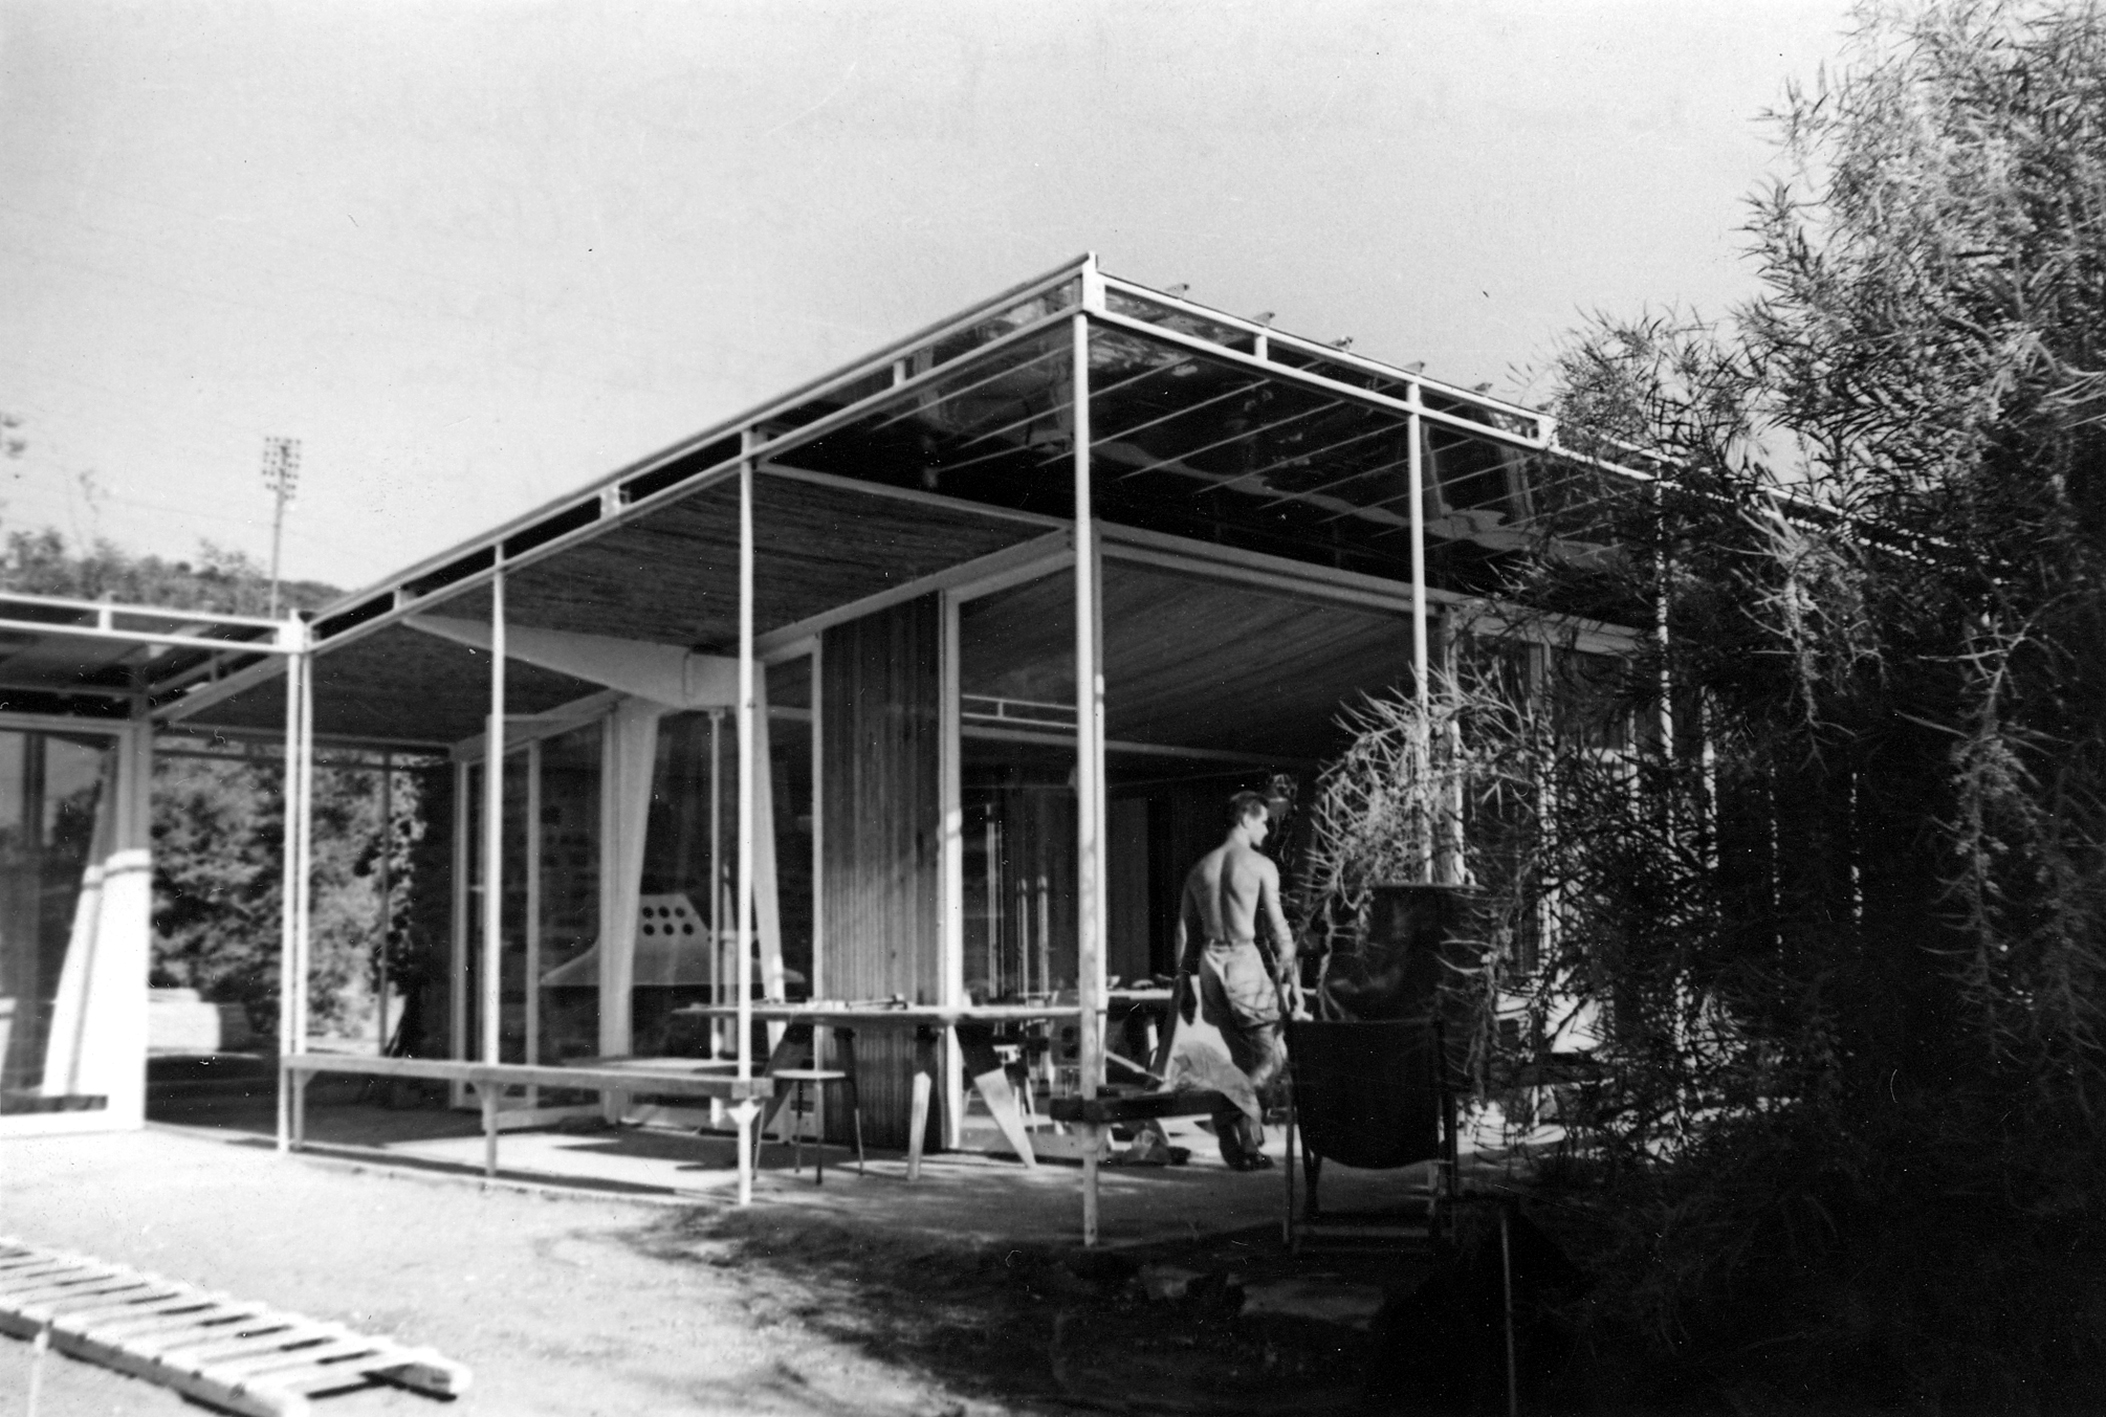 Maison de vacances à portique pour la famille Dollander, Saint-Clair, 1949-1951 (H. Prouvé, arch.).